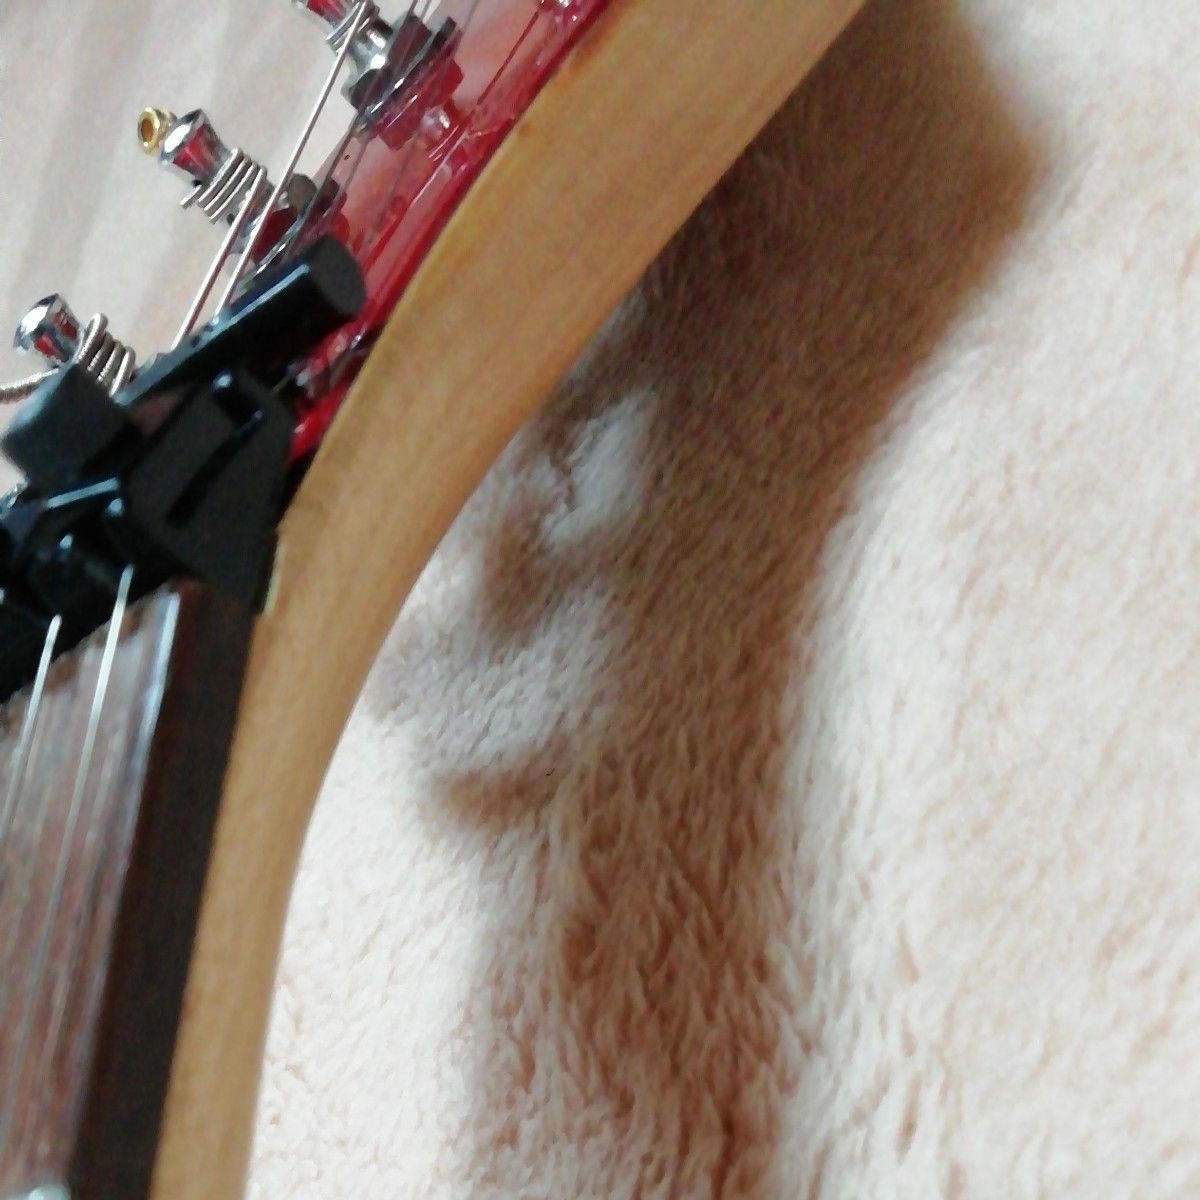 狂気な美品 Aria ProⅡ Stratocaster MA改造品フロイドローズタイプ エレキギター 致命傷あり